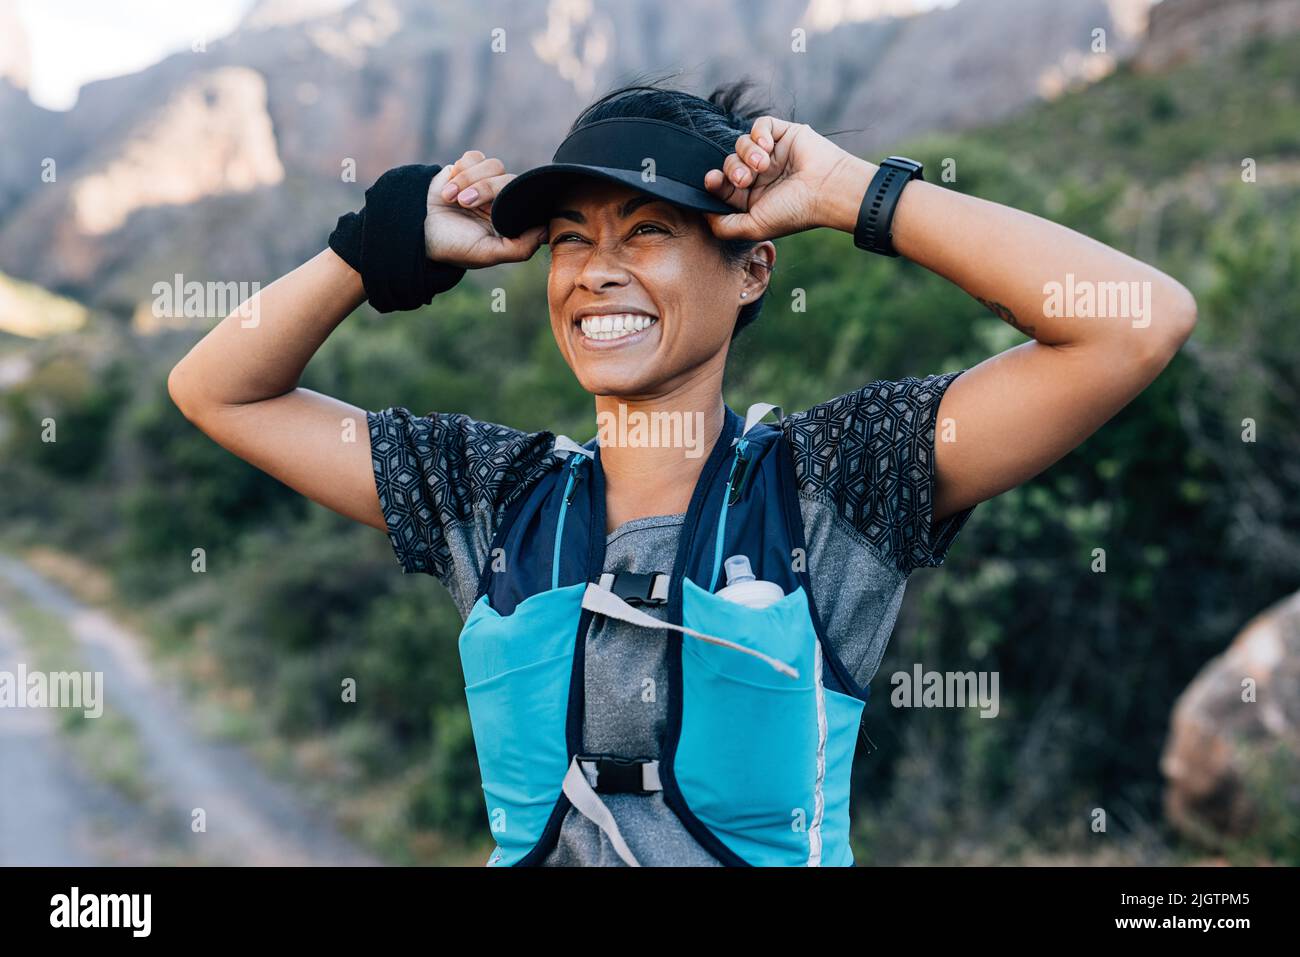 Lachende Frau, die Mütze hält und die Aussicht genießt. Junge Frau im Sport tragen in wildem Gelände. Stockfoto